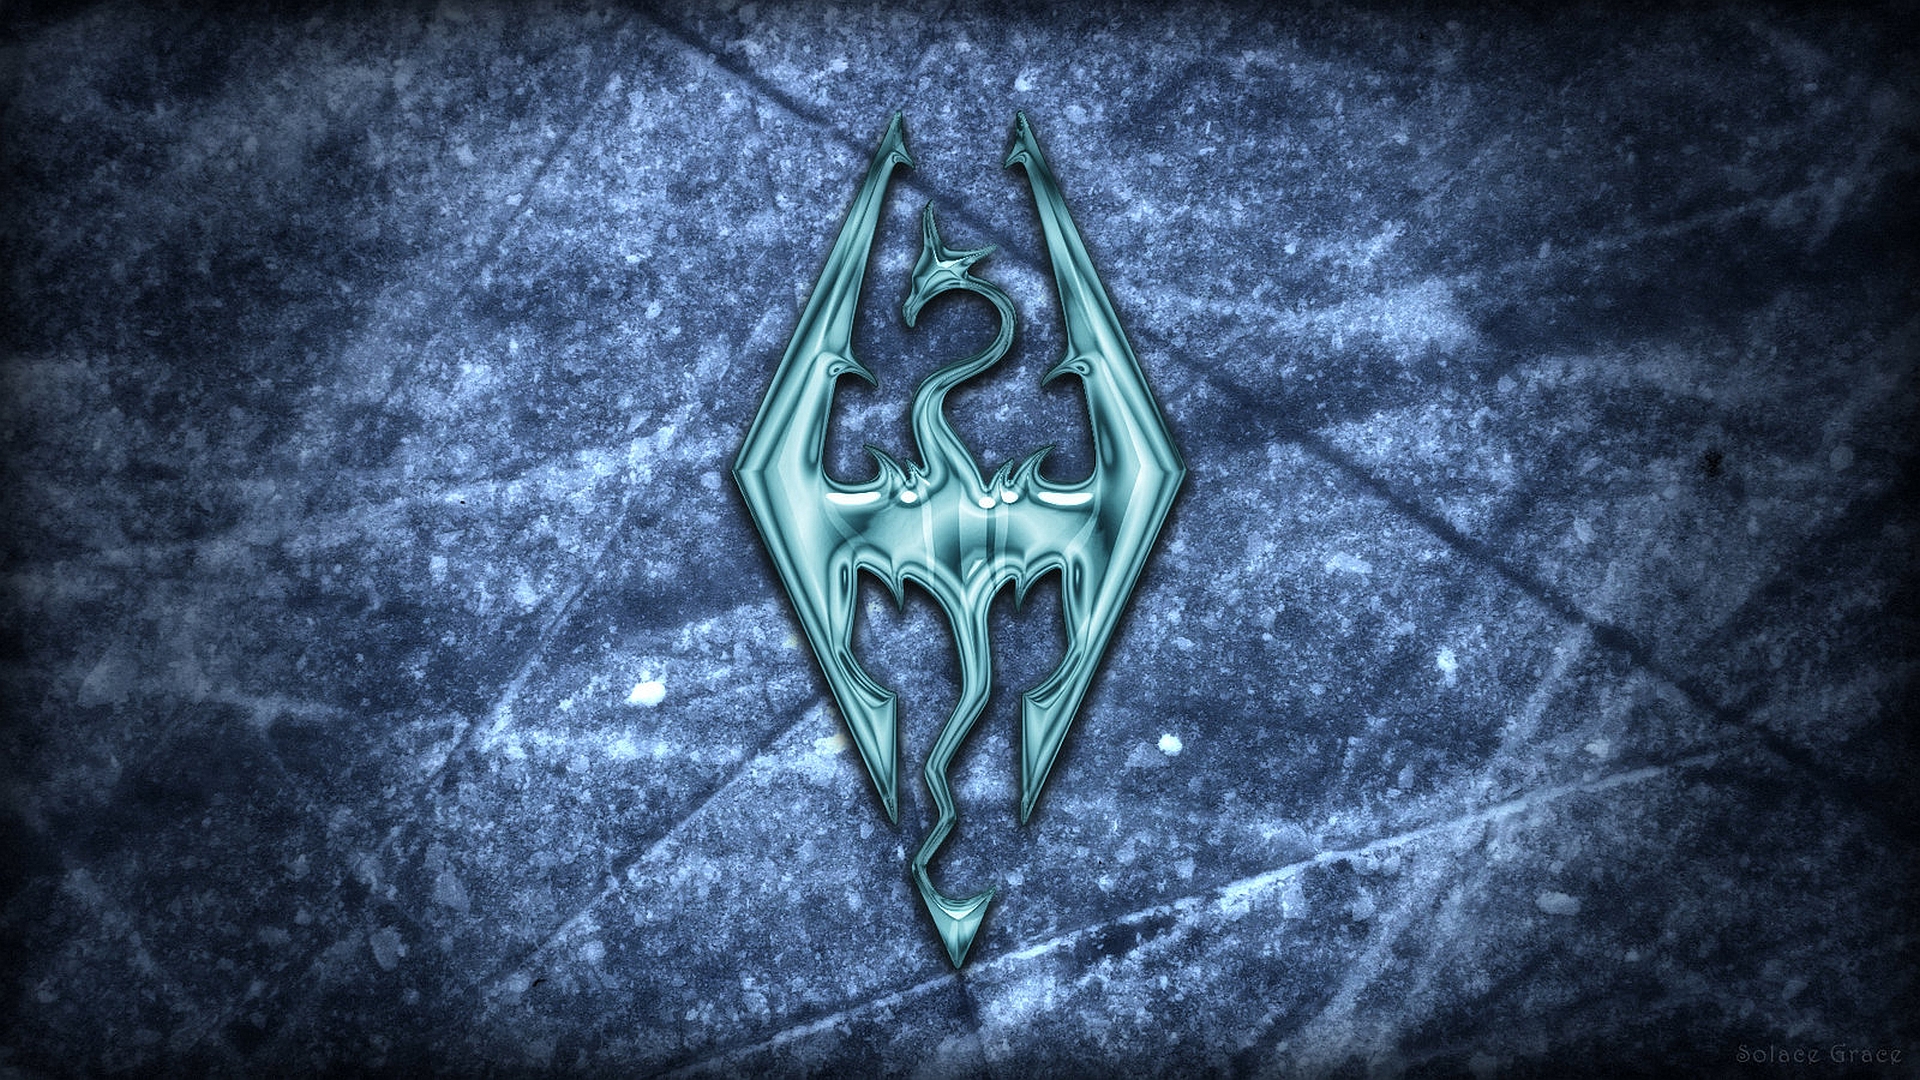 Wallpaper The Elder Scrolls V: Skyrim logo on the ice